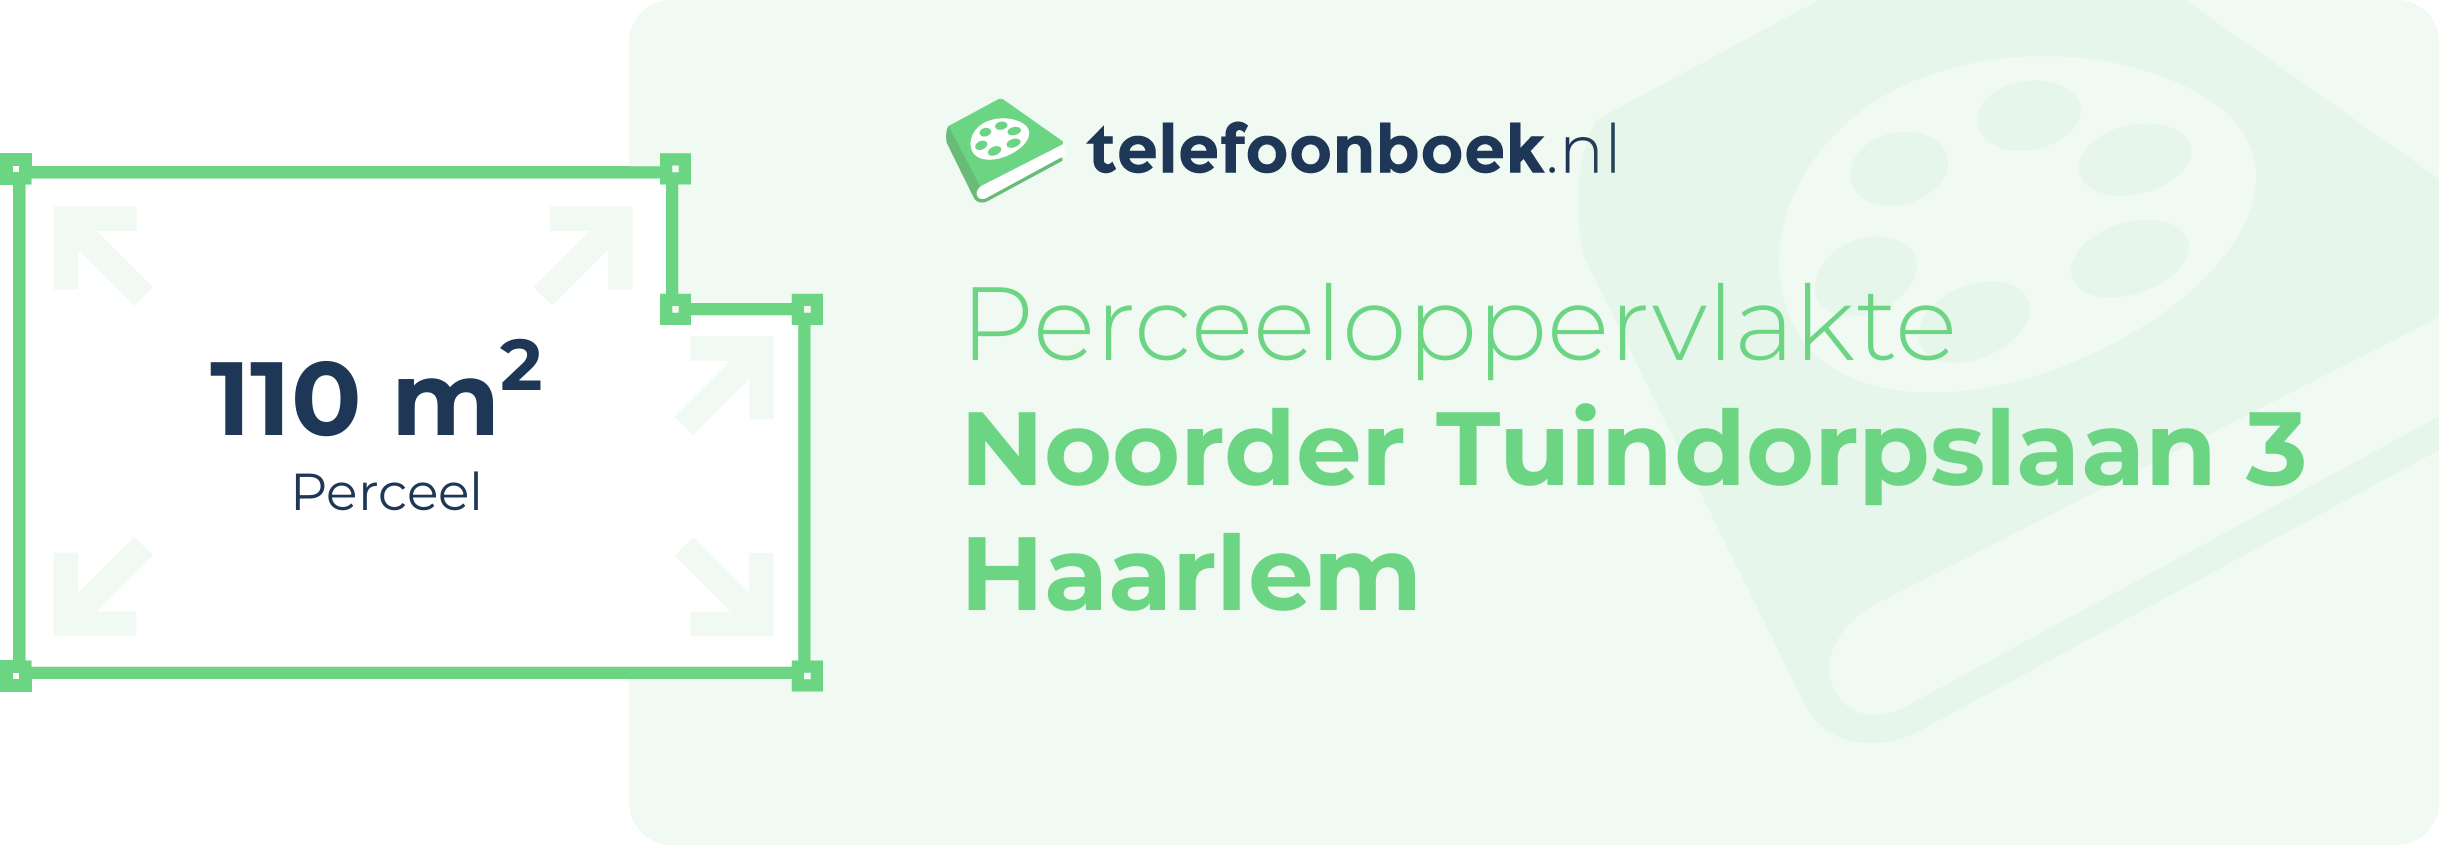 Perceeloppervlakte Noorder Tuindorpslaan 3 Haarlem